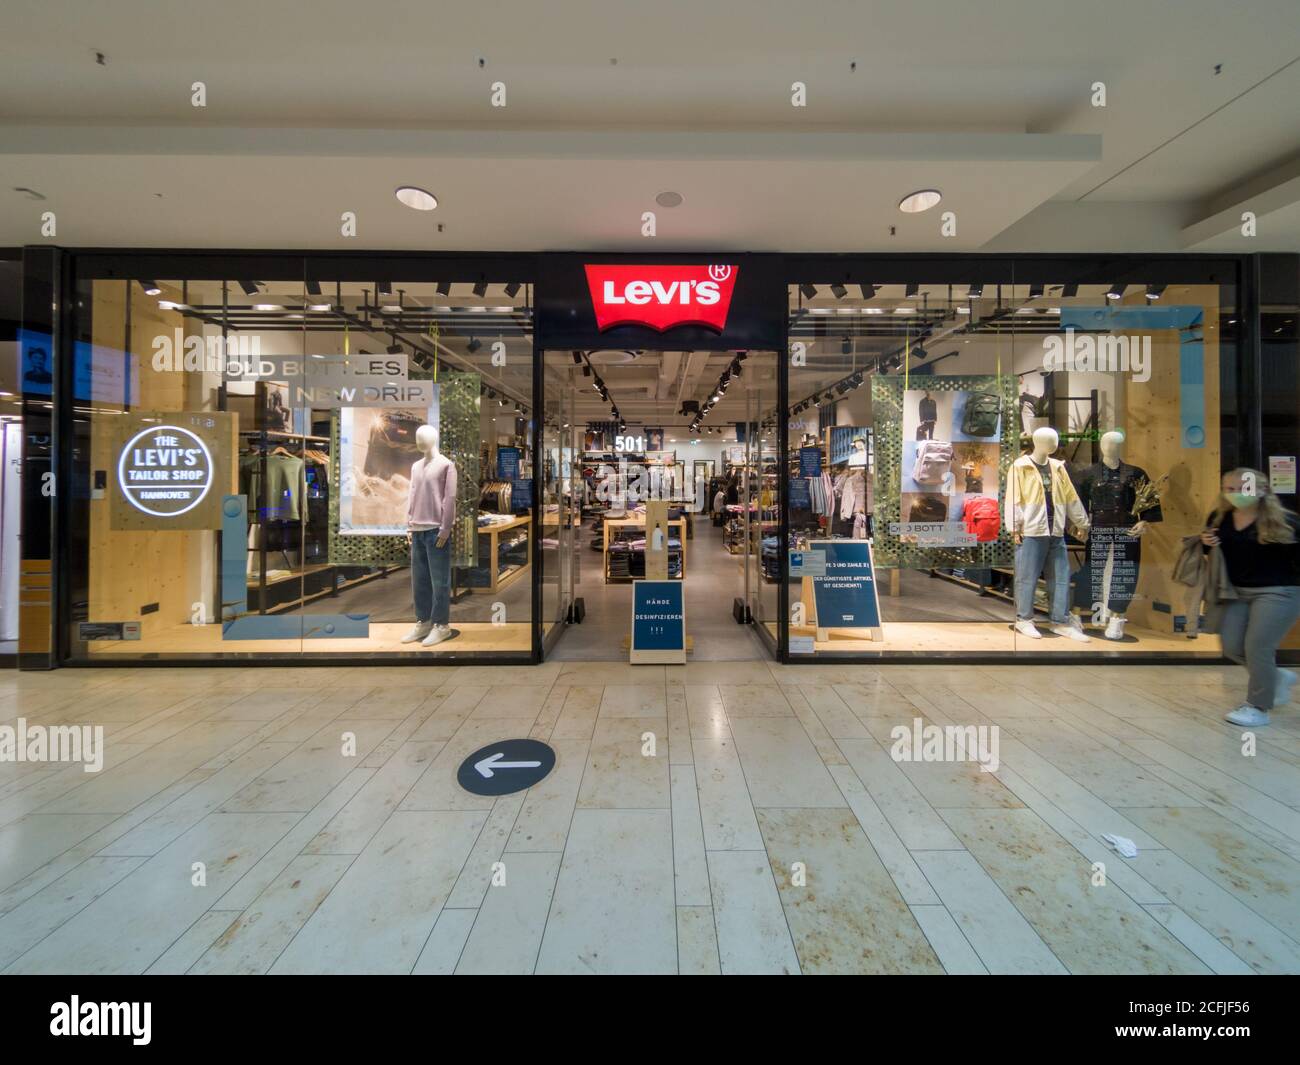 LEVI'S Shop Store Front in Mall in Hannover, Deutschland,  Levis  ist eine berühmte Mode amerikanische Marke von lässigen Jeans und Hosen  Stockfotografie - Alamy